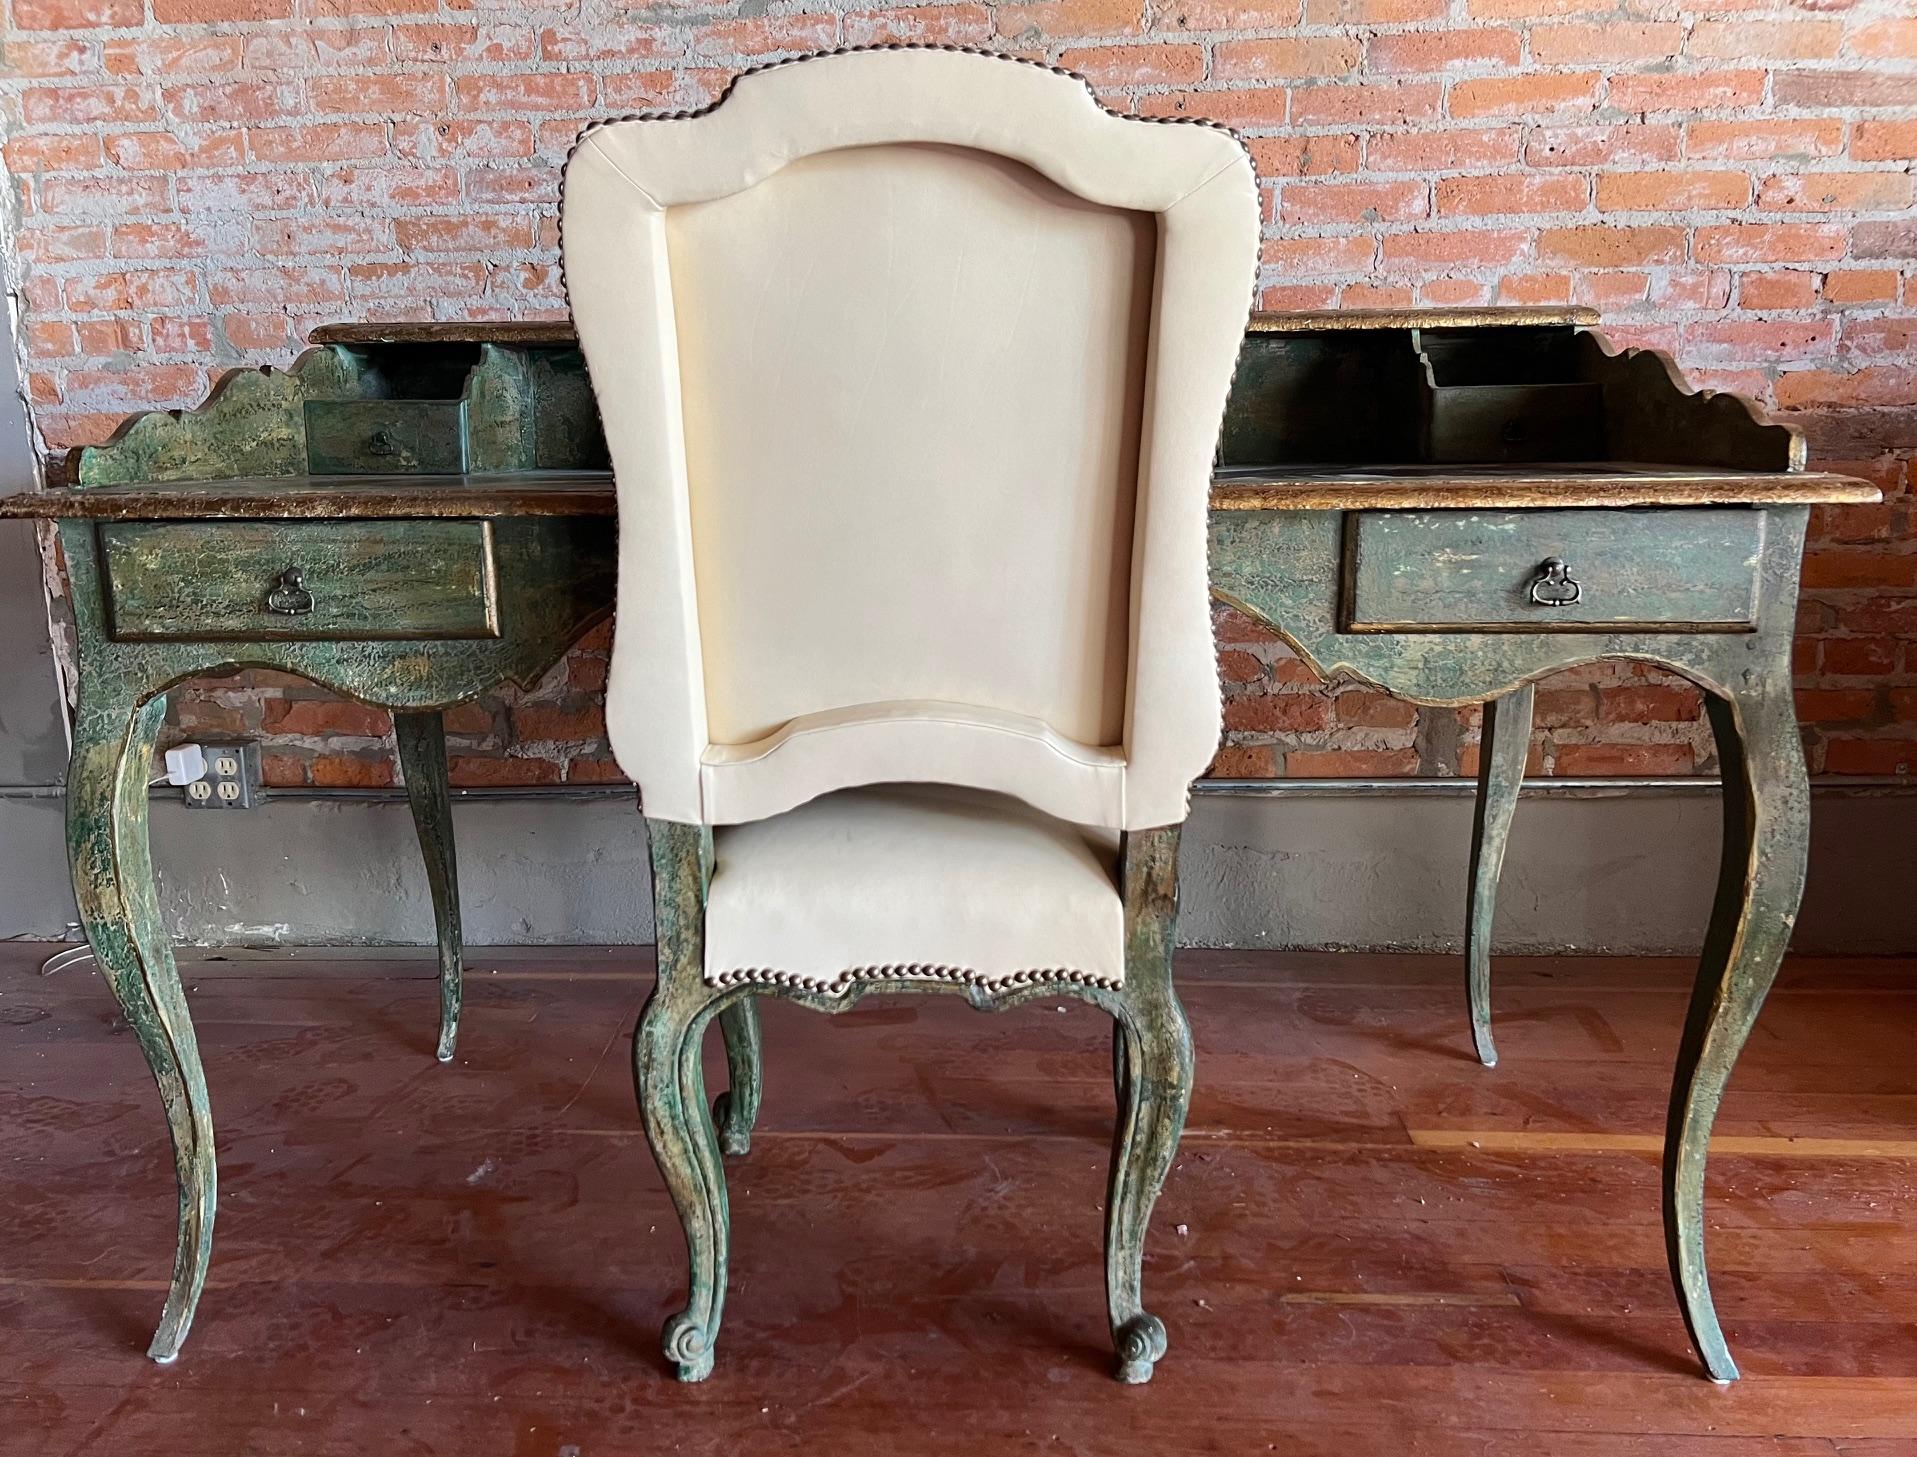 Die Reproduktion eines Schreibtischs und eines Stuhls aus dem 18. Jahrhundert ist einzigartig und handgefertigt. Die Oberfläche heißt Jadeapfel  Der Schreibtisch hat eine Lederplatte. Der Stuhl und der Schreibtisch haben die gleichen Oberflächen,